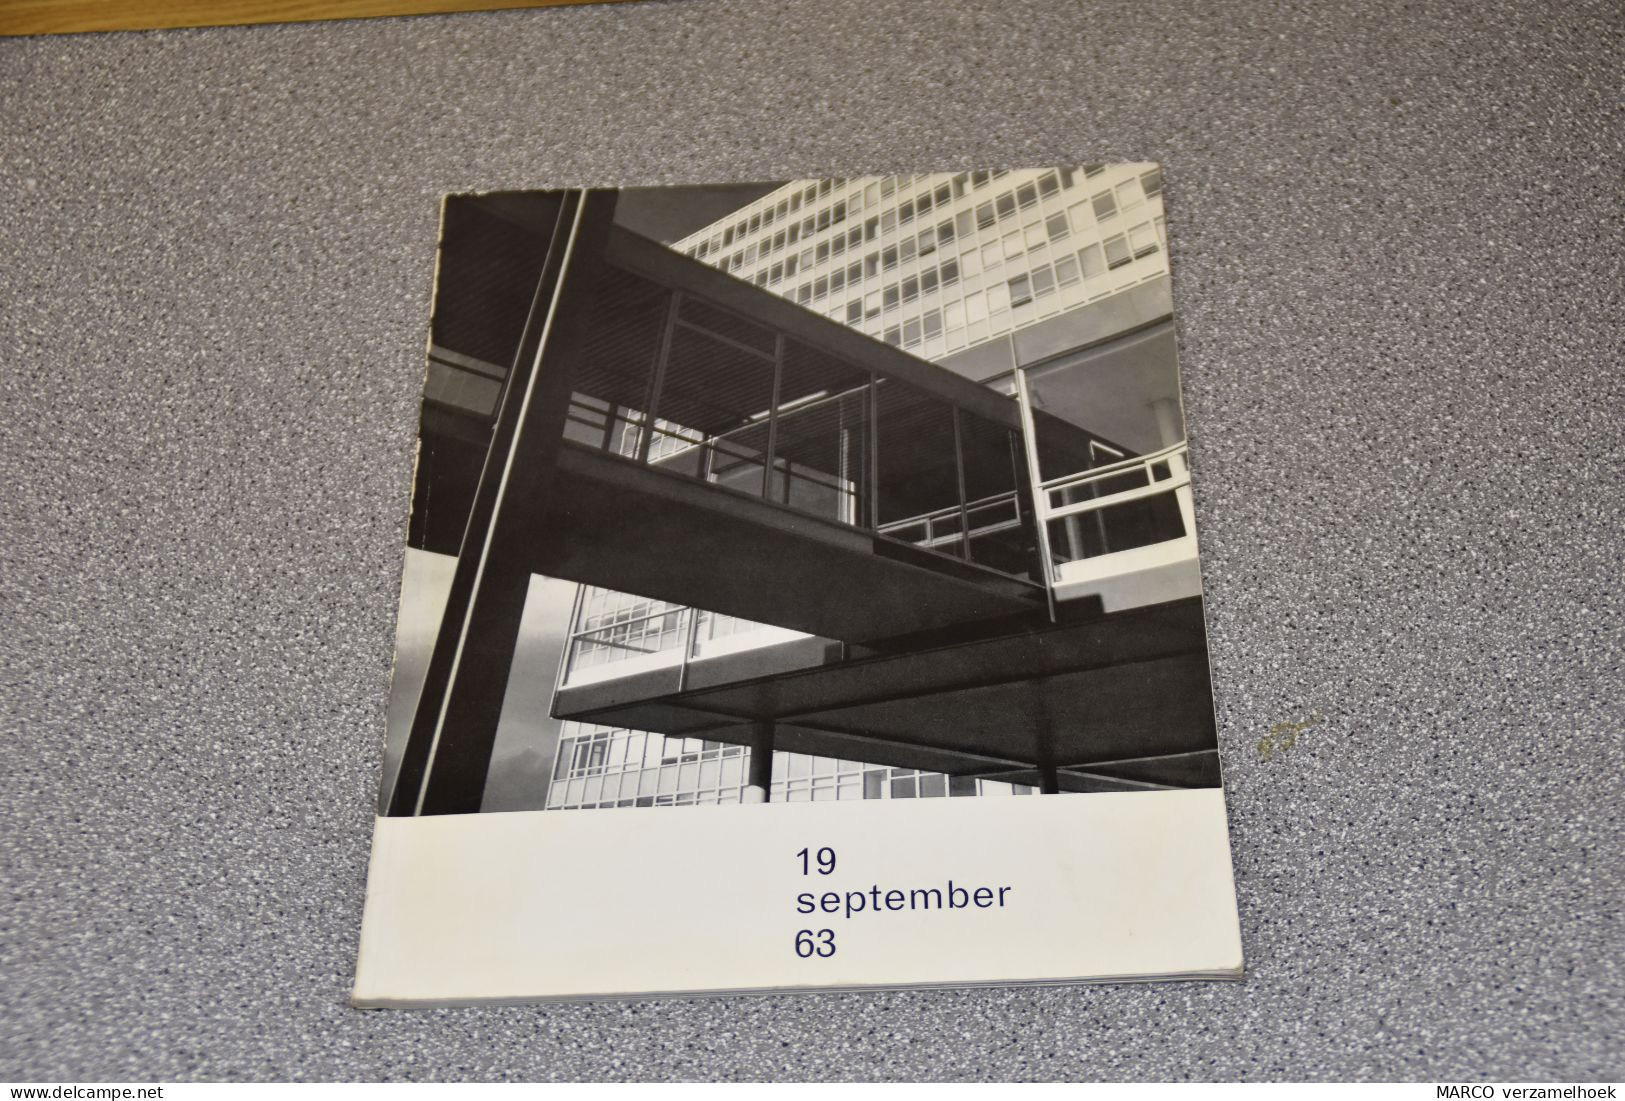 THE Technische Hogeschool Eindhoven (NL) 1963 - Sachbücher